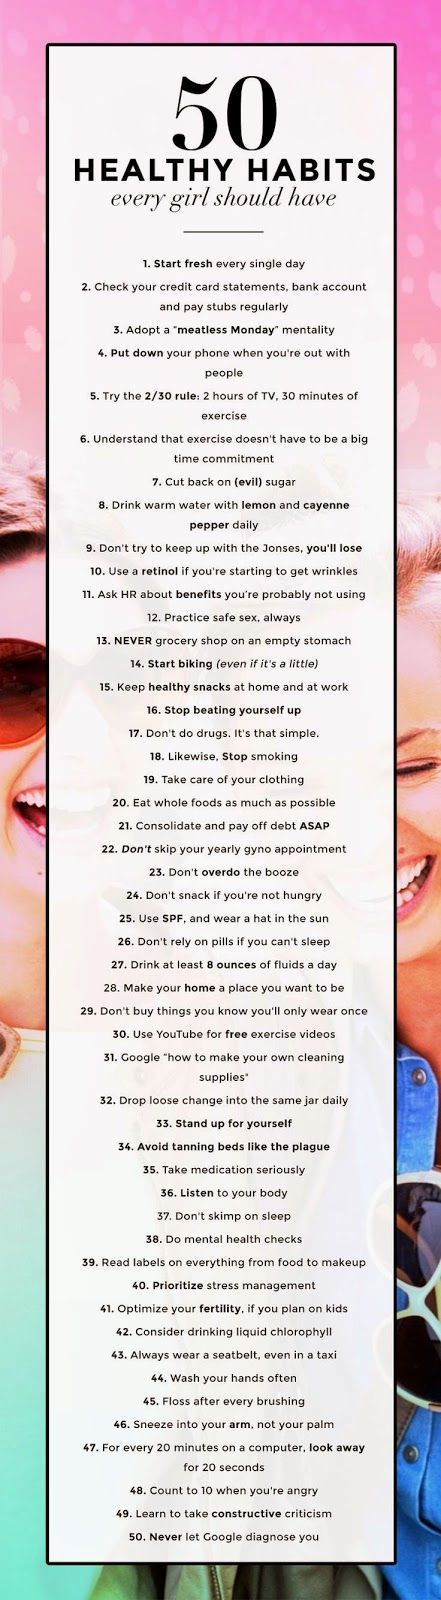 50 healthy habits